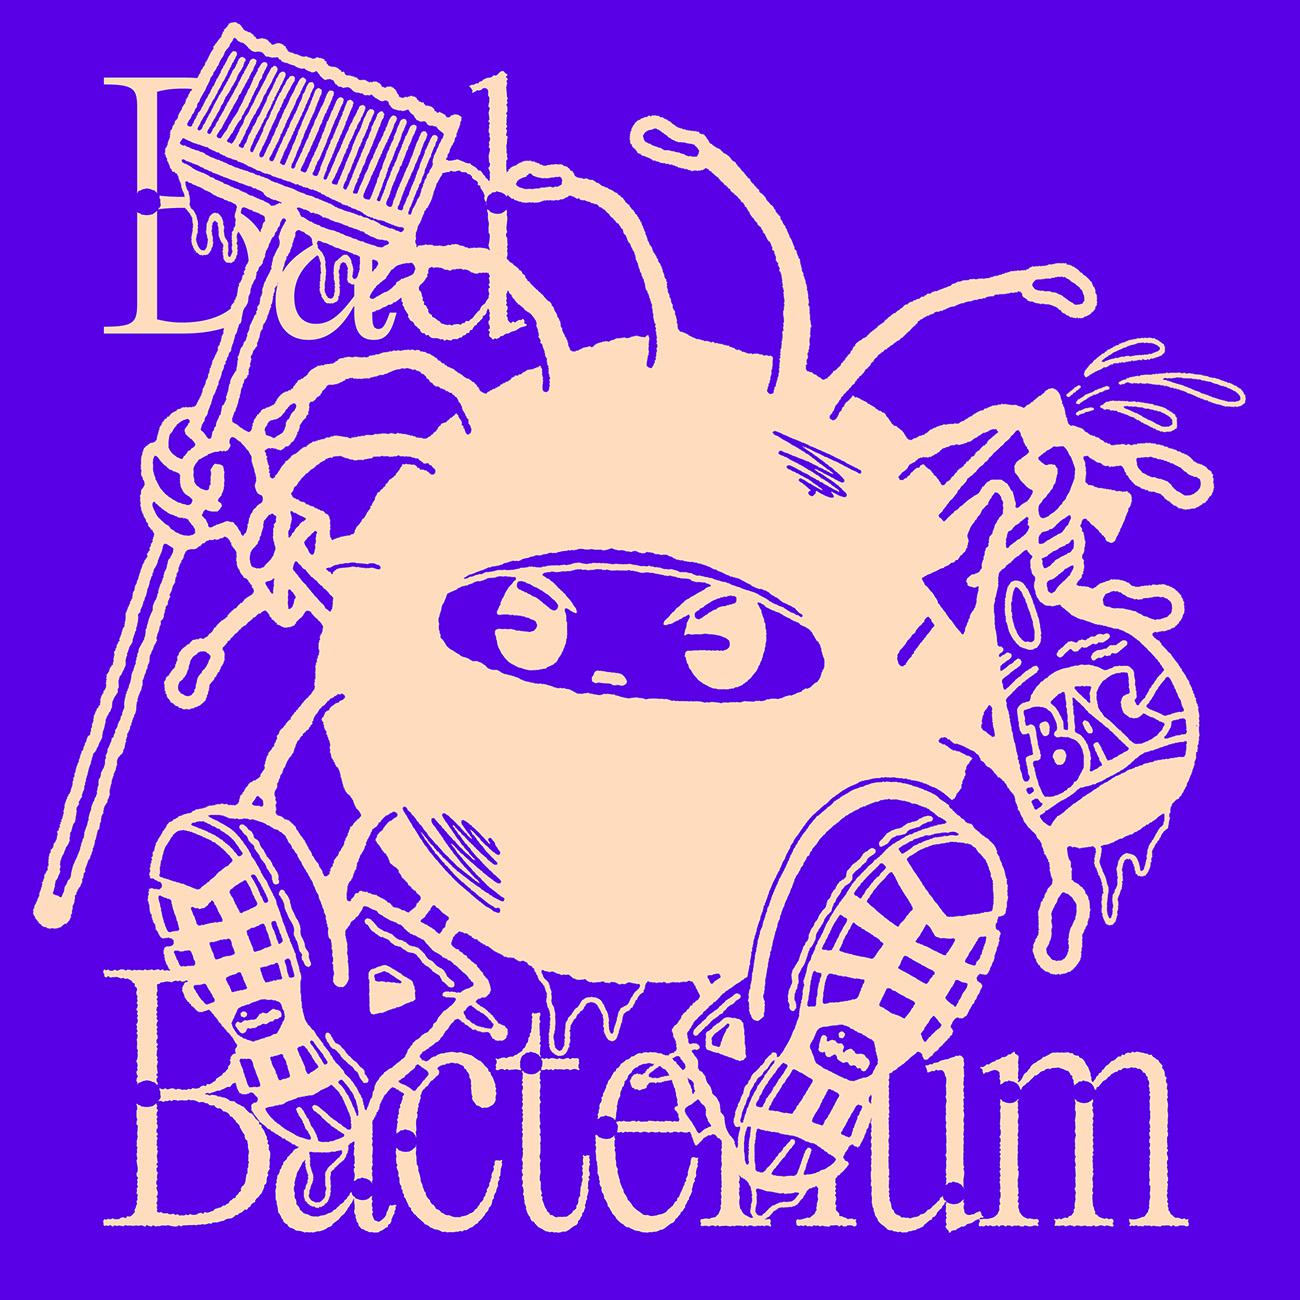 Bad Bacterium